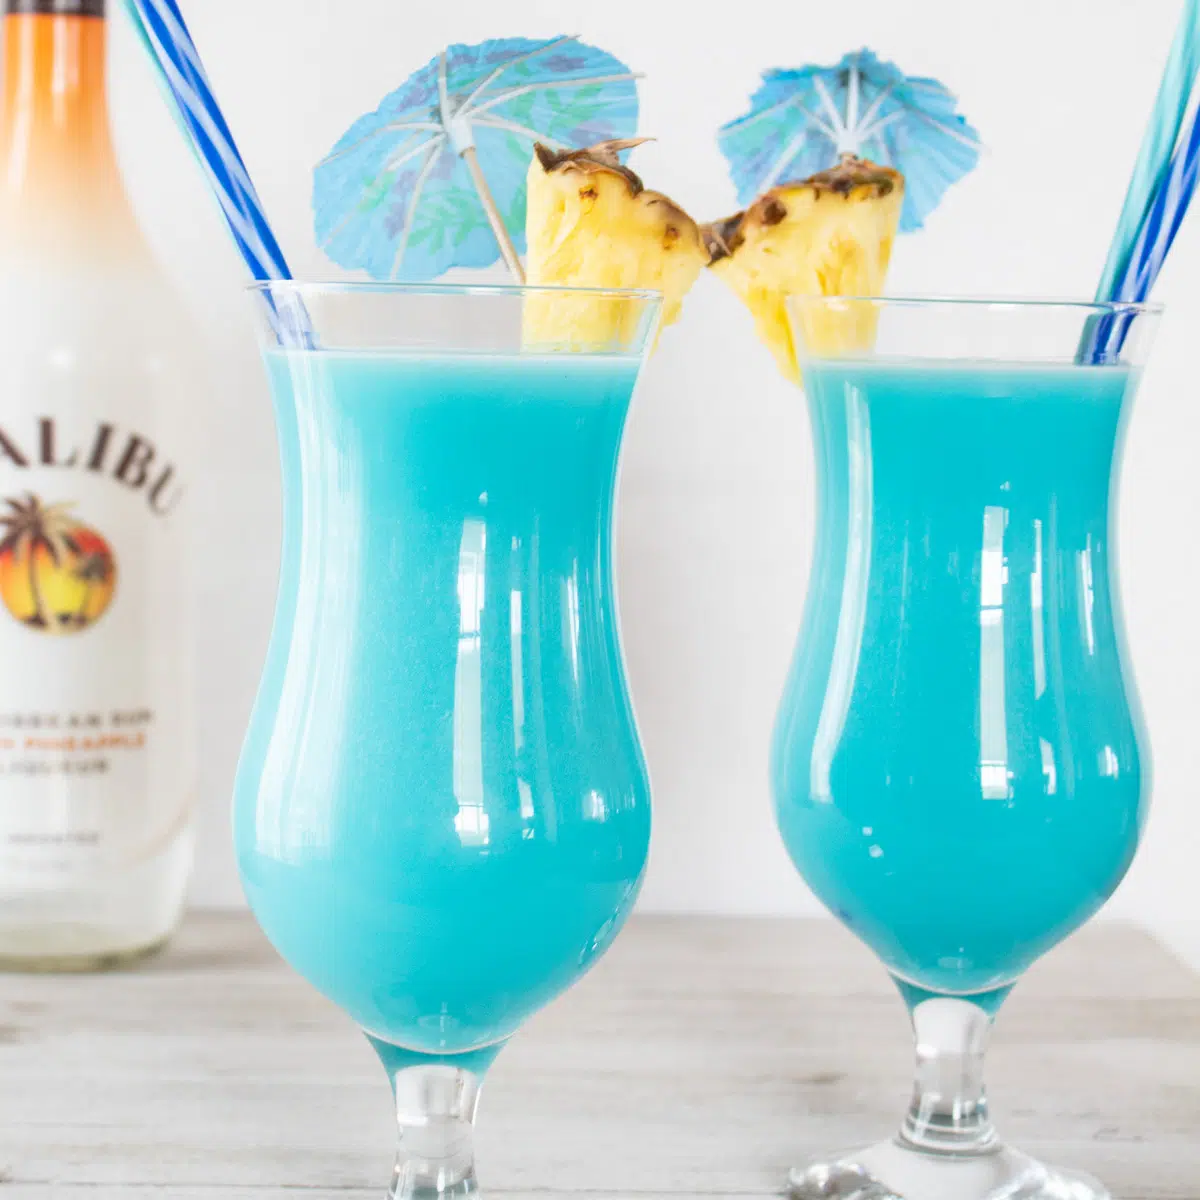 Mražený modrý havajský koktejl podávaný v hurrikánských skleničkách s ananasovou oblohou.